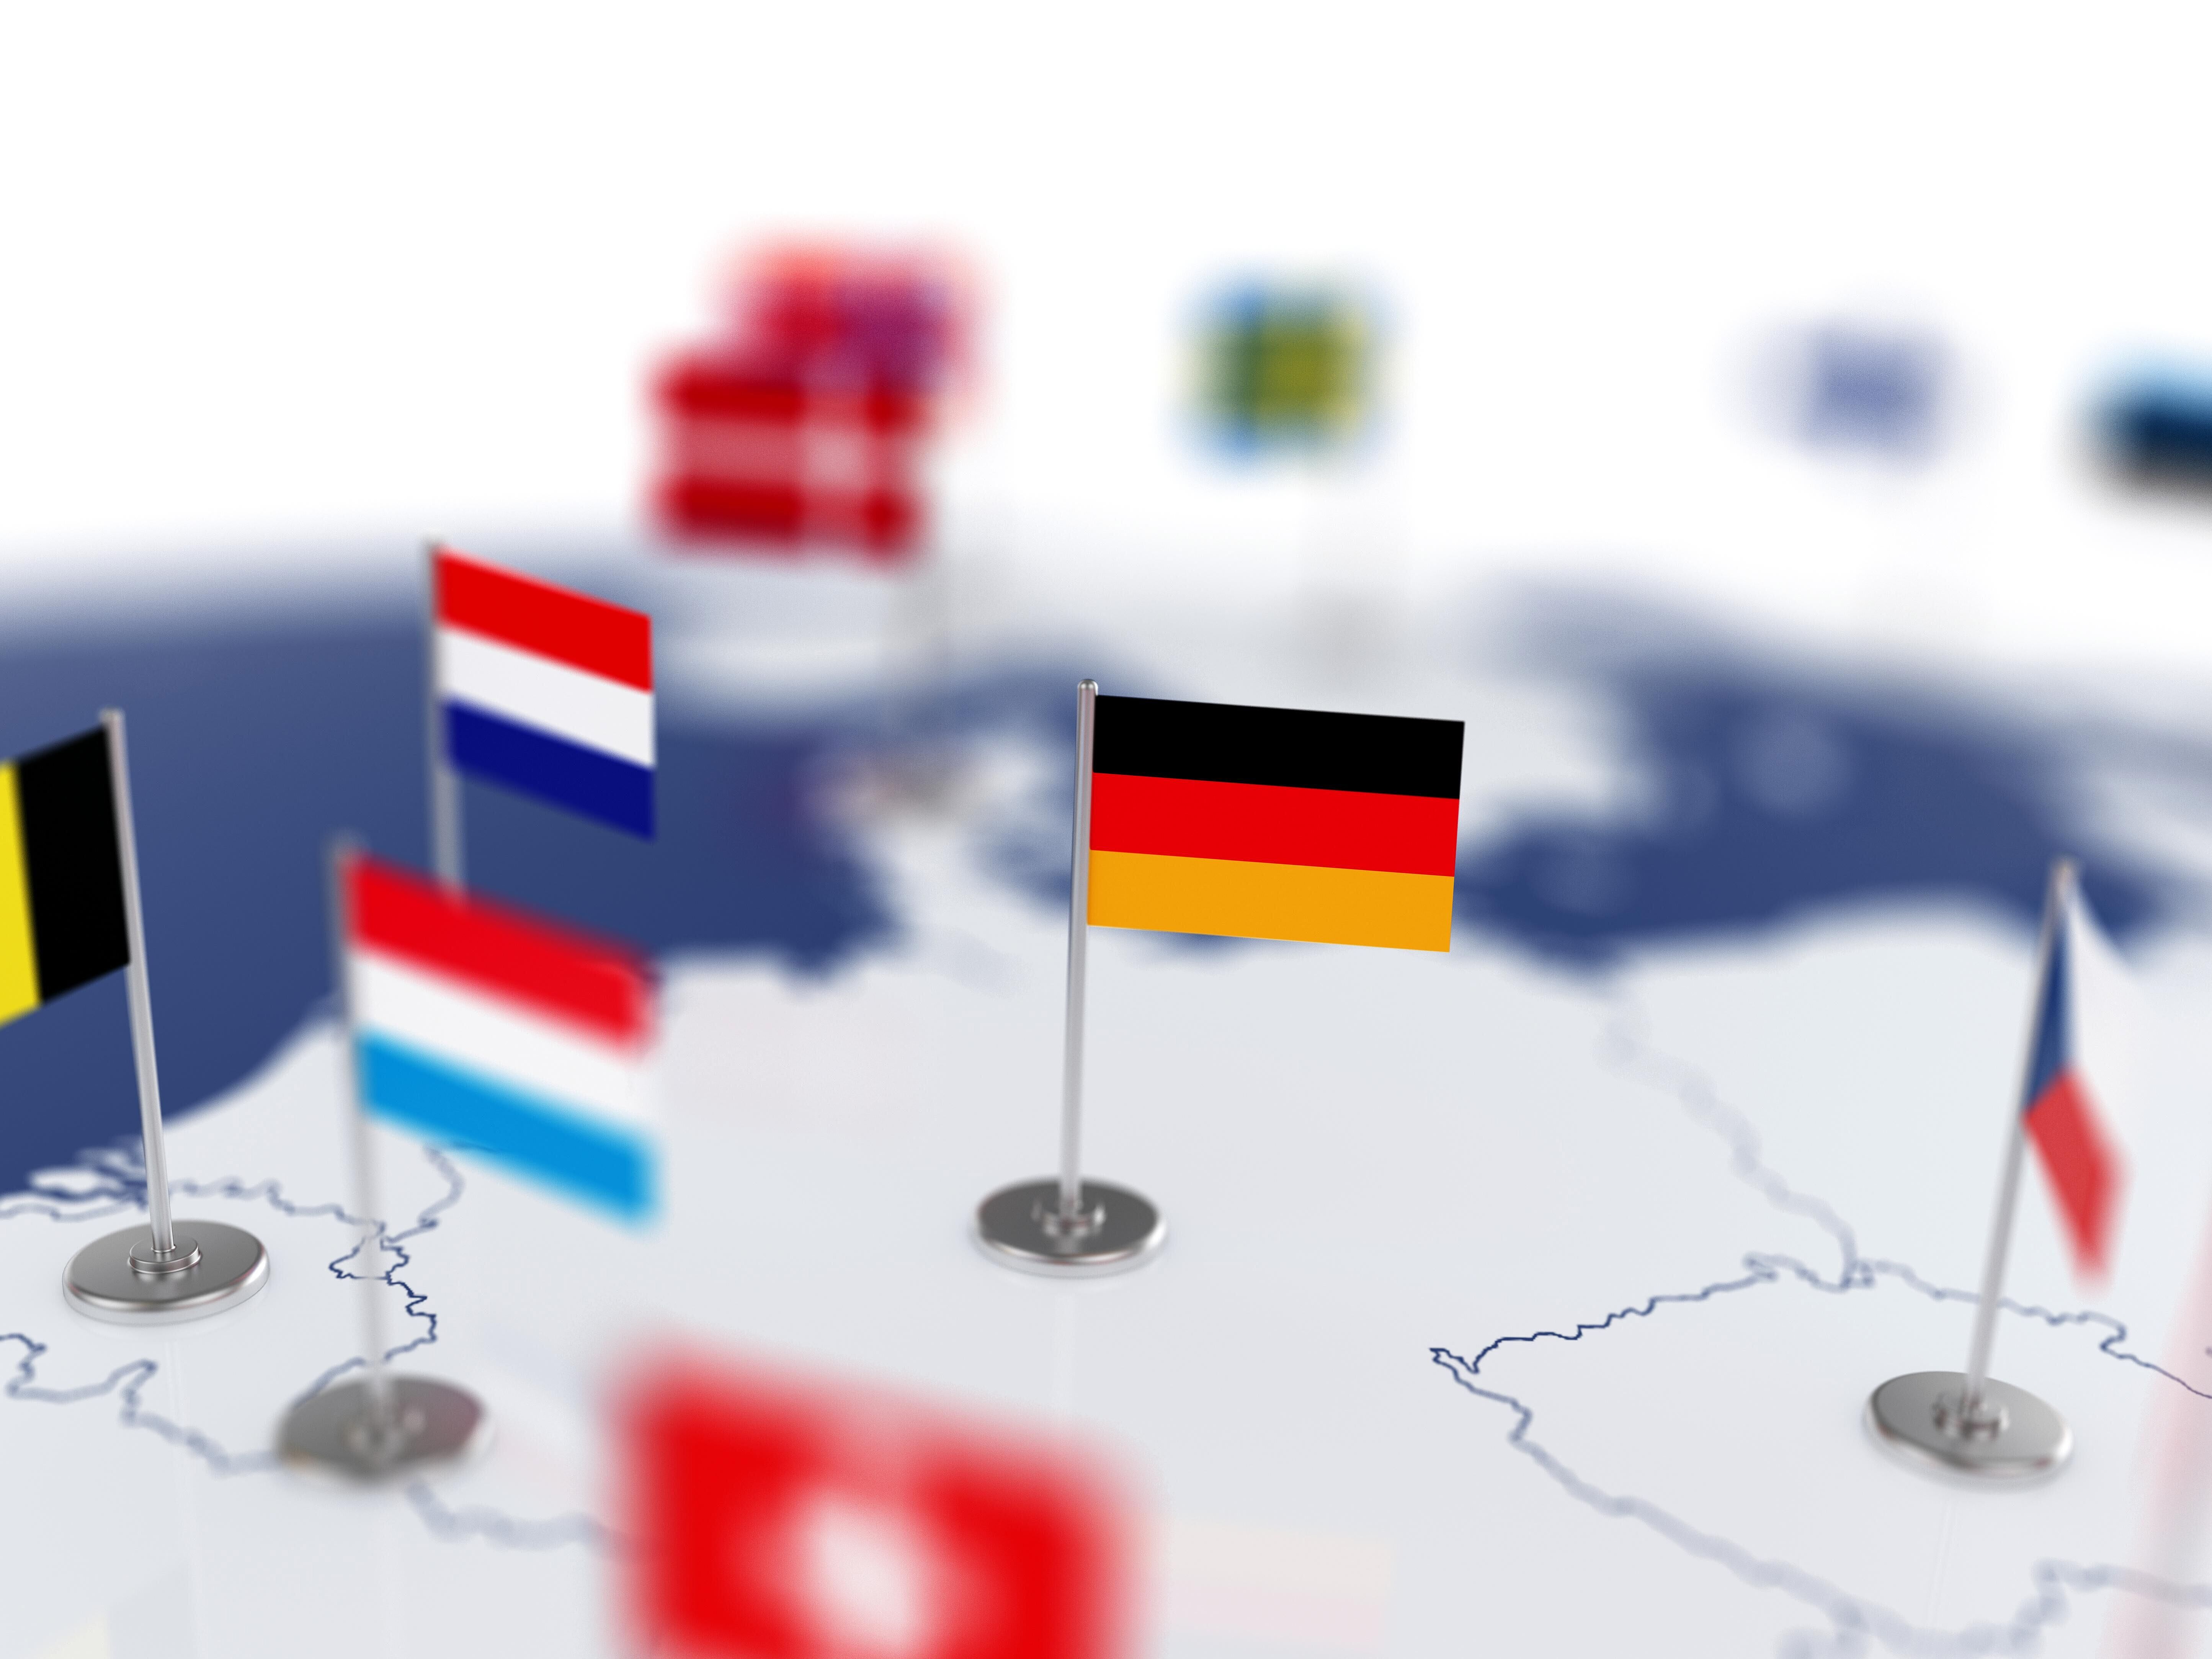 Deutschlandkarte mit Fähnchen sowie gespickte Fähnchen der angrenzenden Länder, wie Niederlande, Belgien, Frankreich, Tschechien,